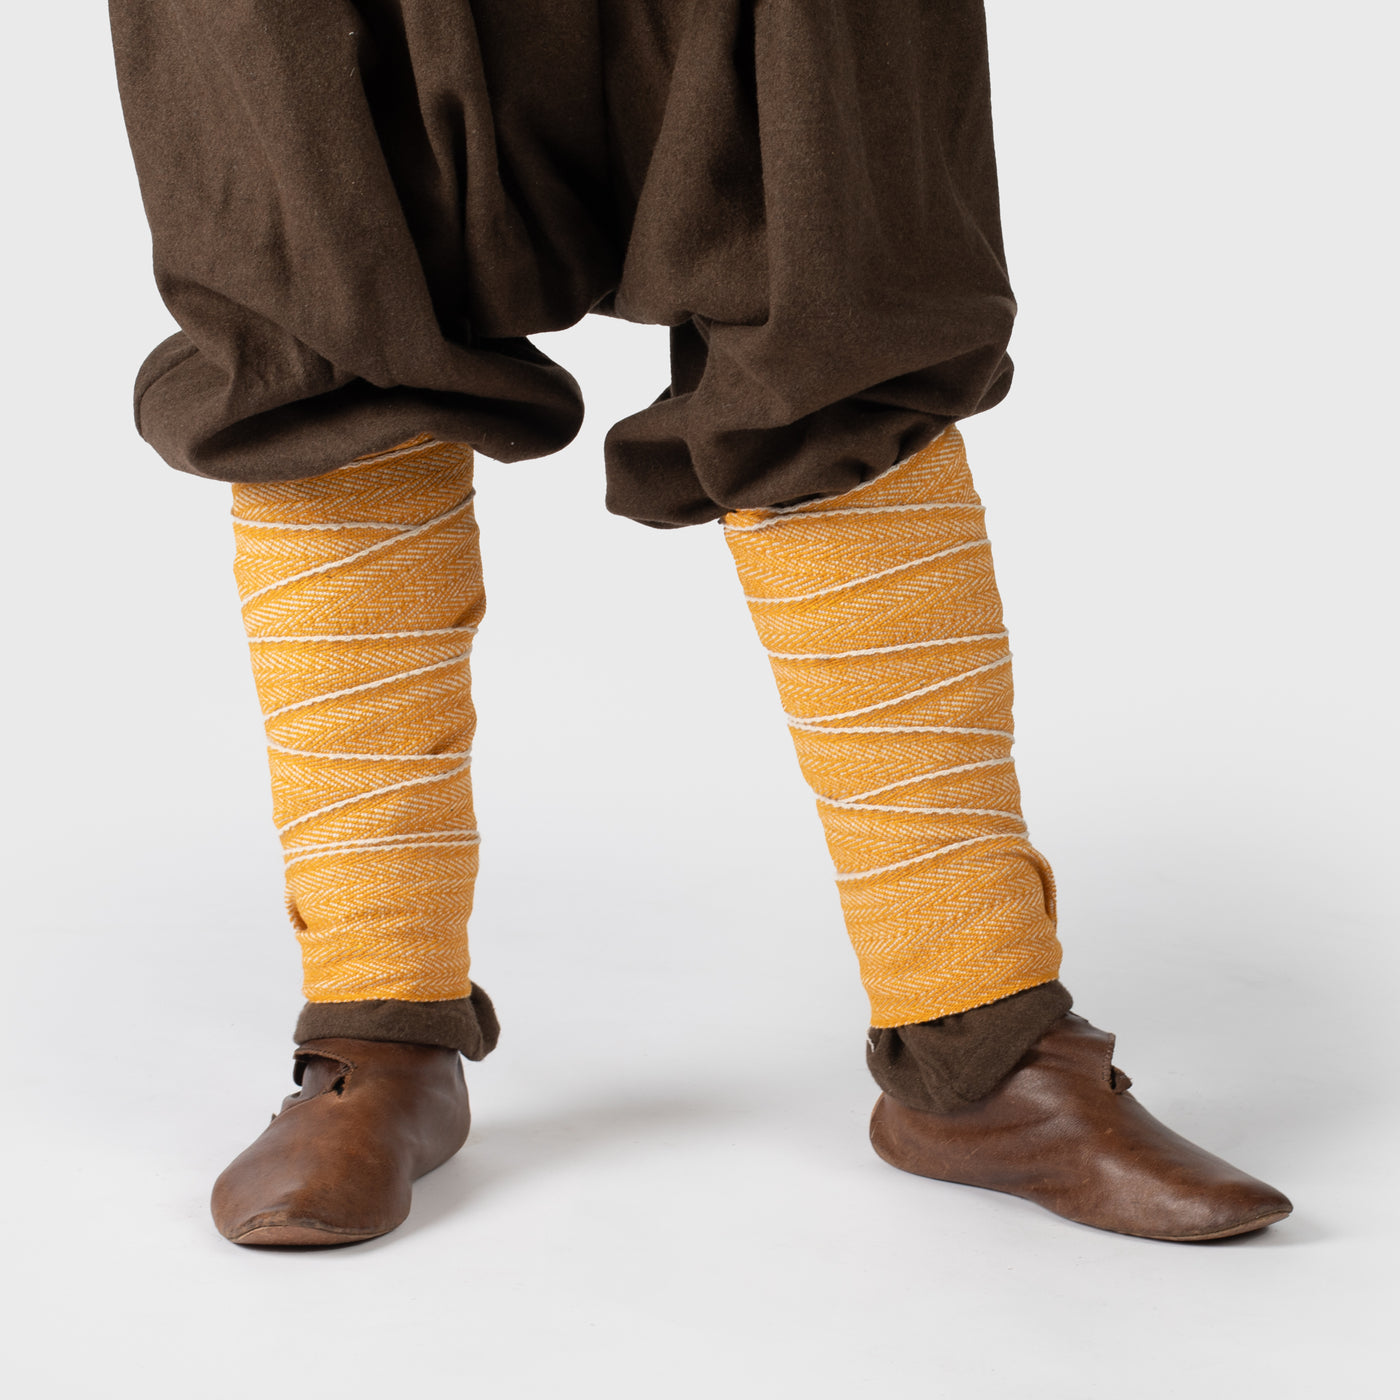 Viking Leg Wraps, Handwoven, Yellow and White